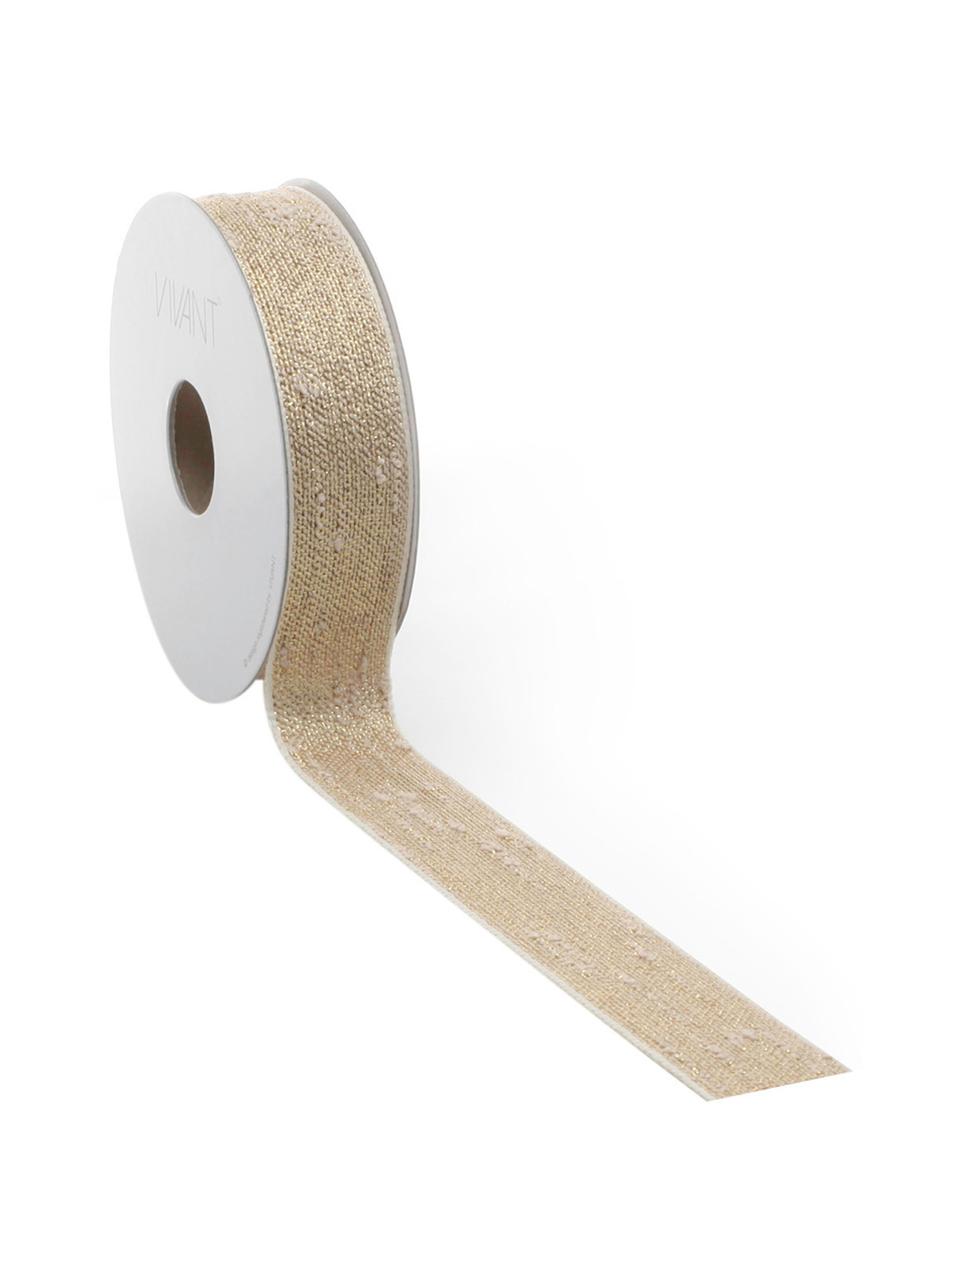 Cadeaulint Boucle met lurex draden, 55% polyester, 45% lurex draad, Goudkleurig, beige, 3 x 1000 cm